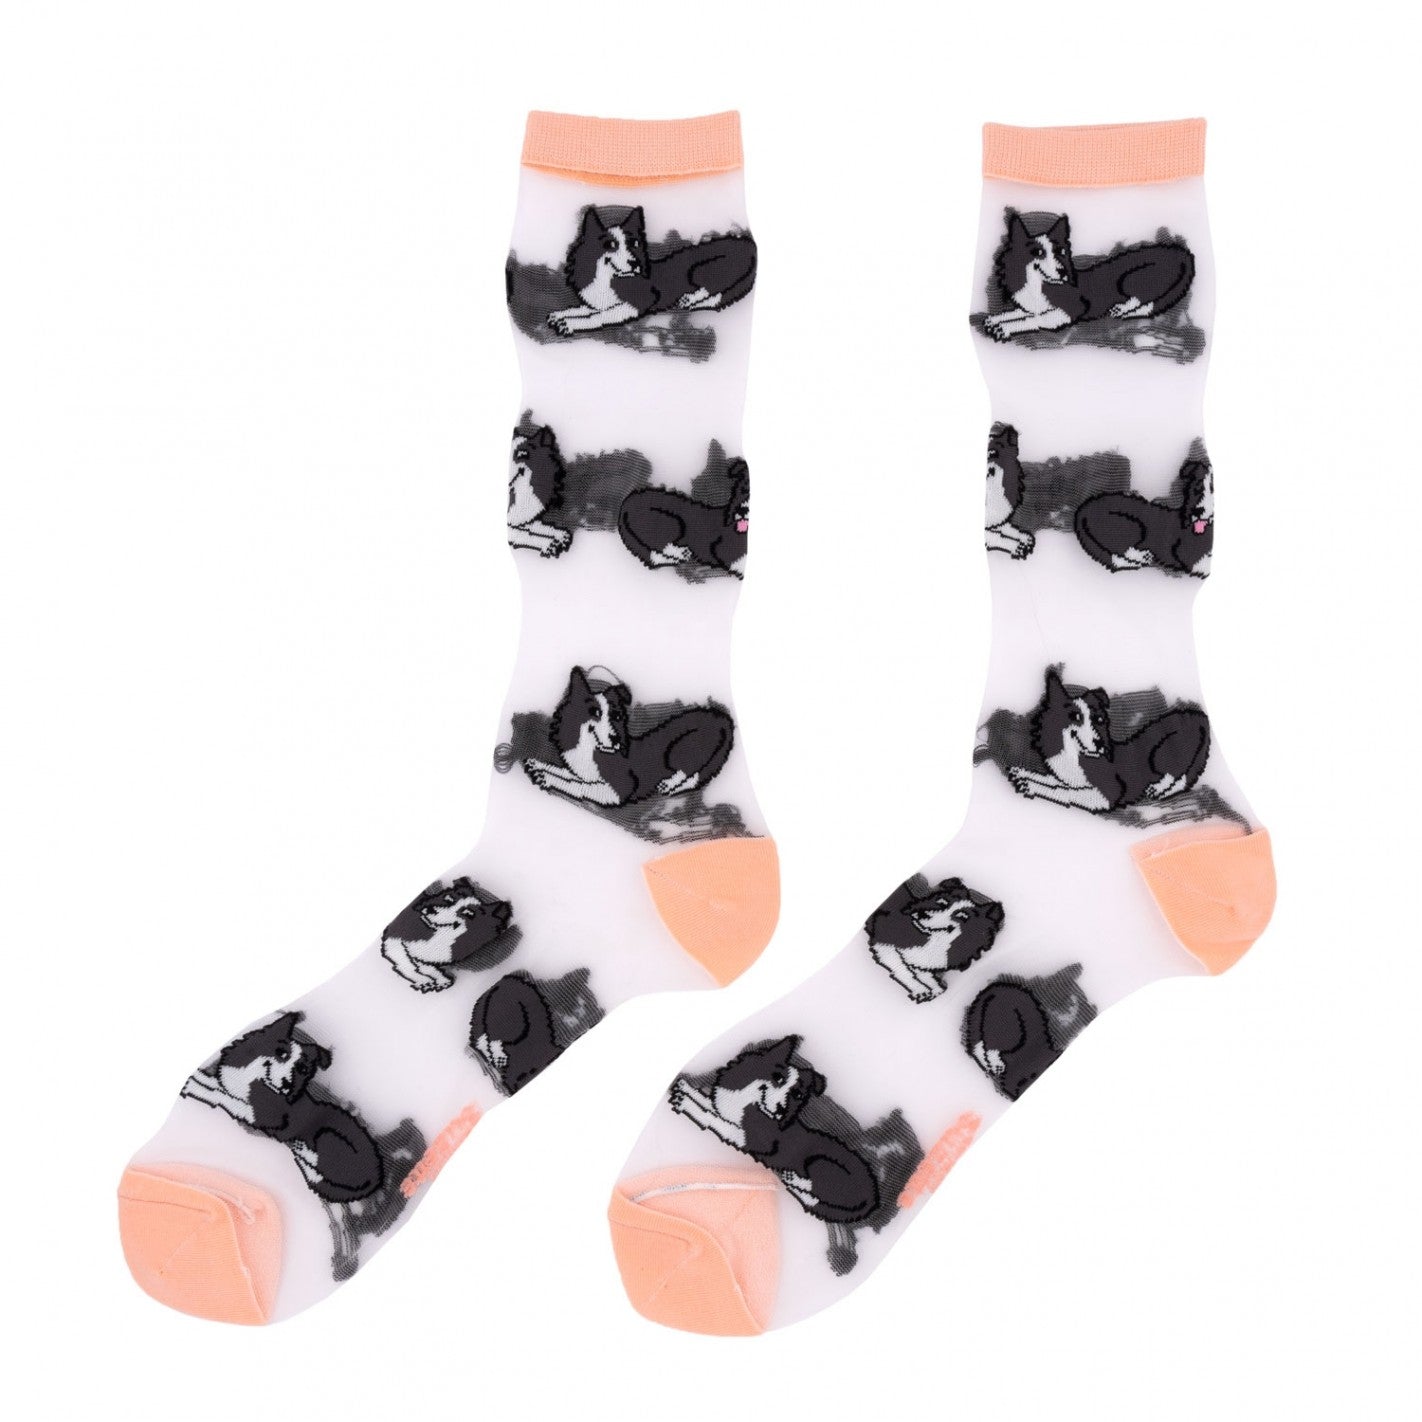 Dog Sheer Socks